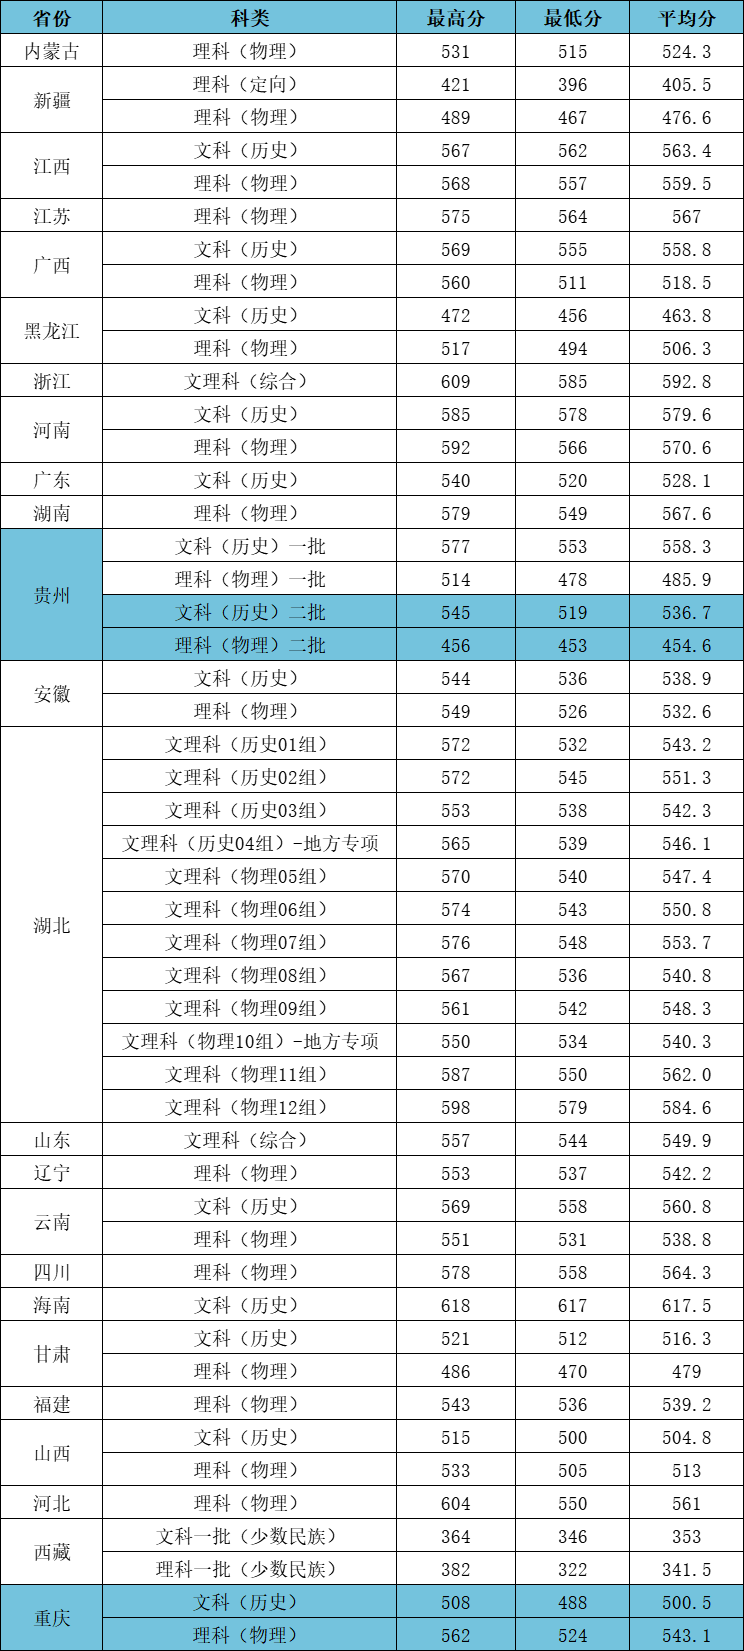 2023江汉大学高考录取进度及录取分数线（7.26）